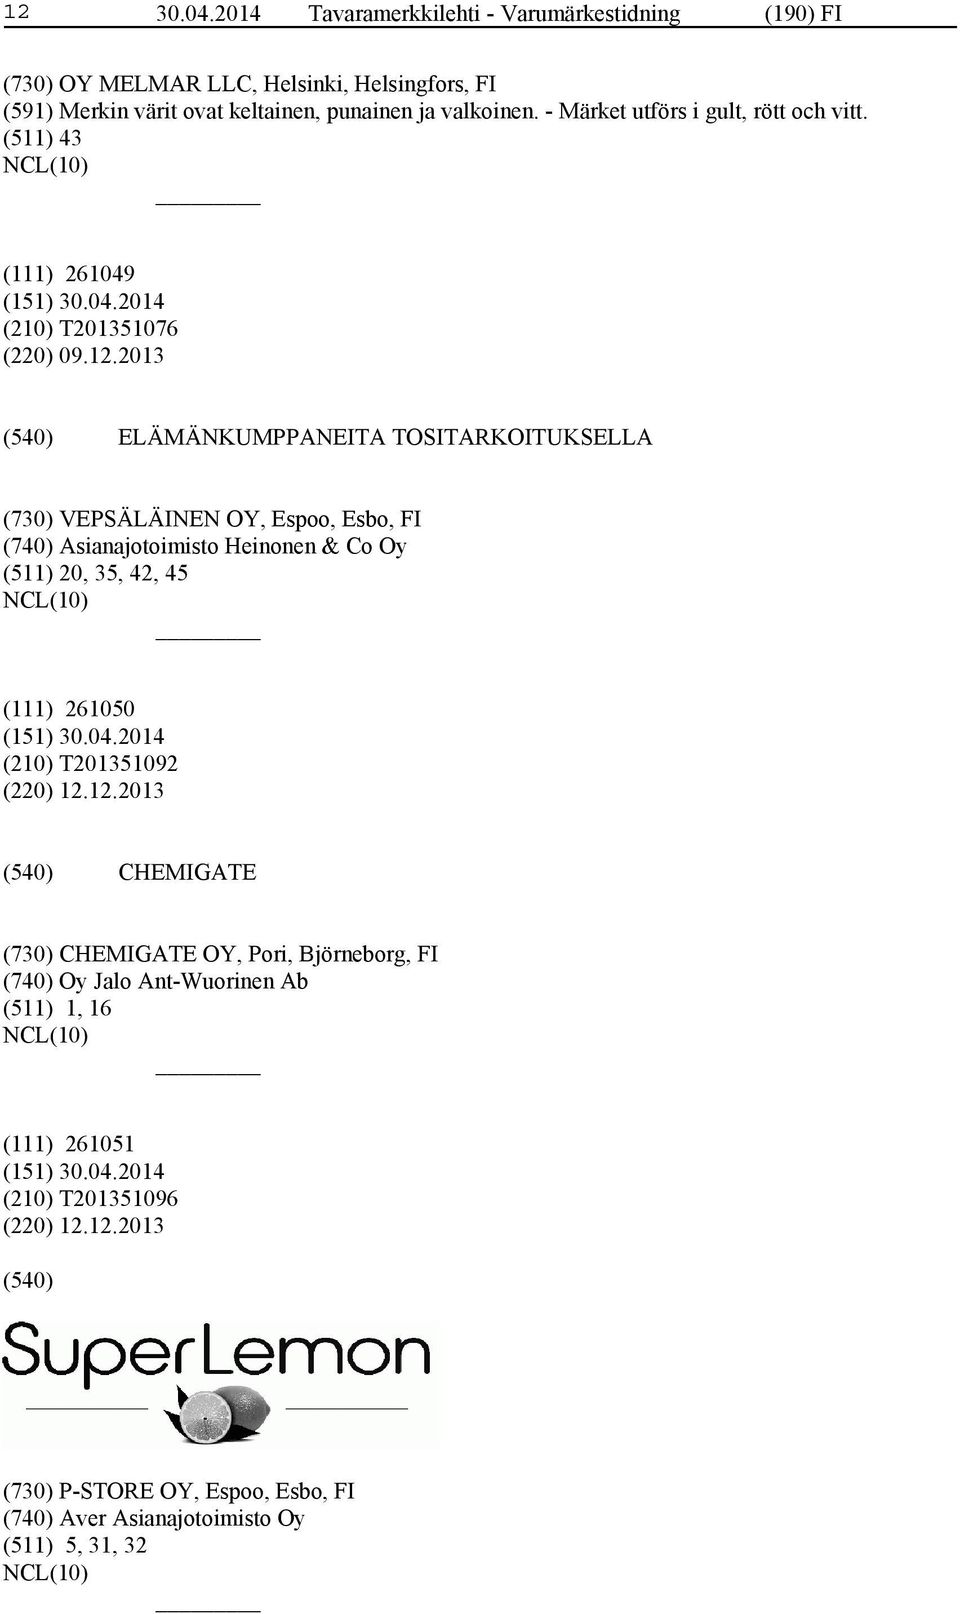 2013 ELÄMÄNKUMPPANEITA TOSITARKOITUKSELLA (730) VEPSÄLÄINEN OY, Espoo, Esbo, FI (740) Asianajotoimisto Heinonen & Co Oy (511) 20, 35, 42, 45 (111) 261050 (210)